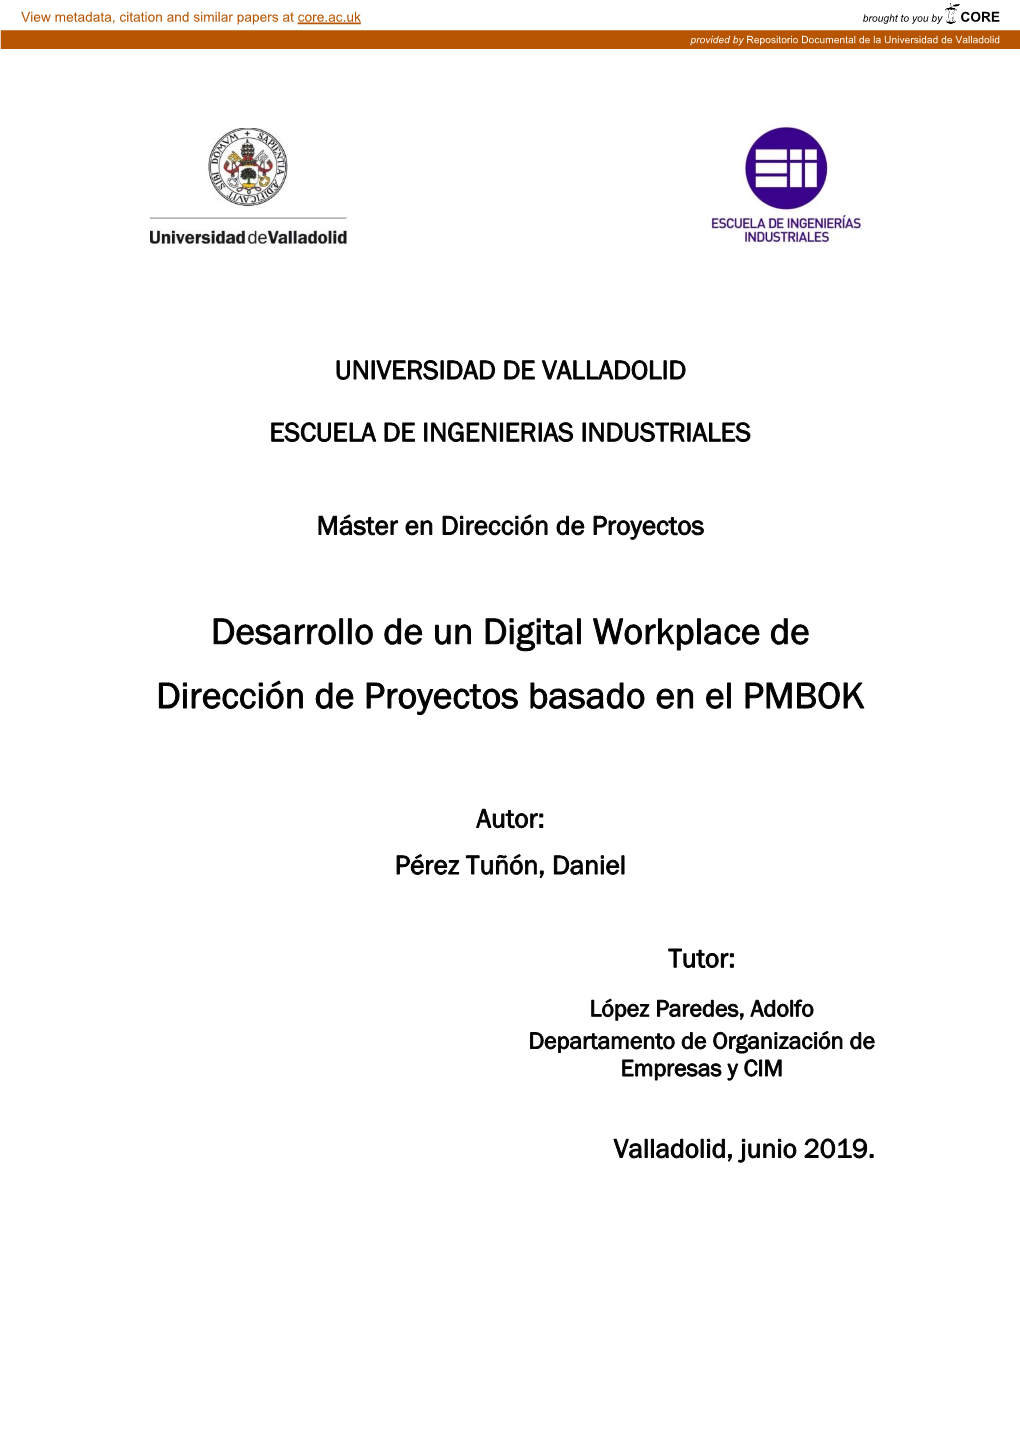 Desarrollo De Un Digital Workplace De Dirección De Proyectos Basado En El PMBOK